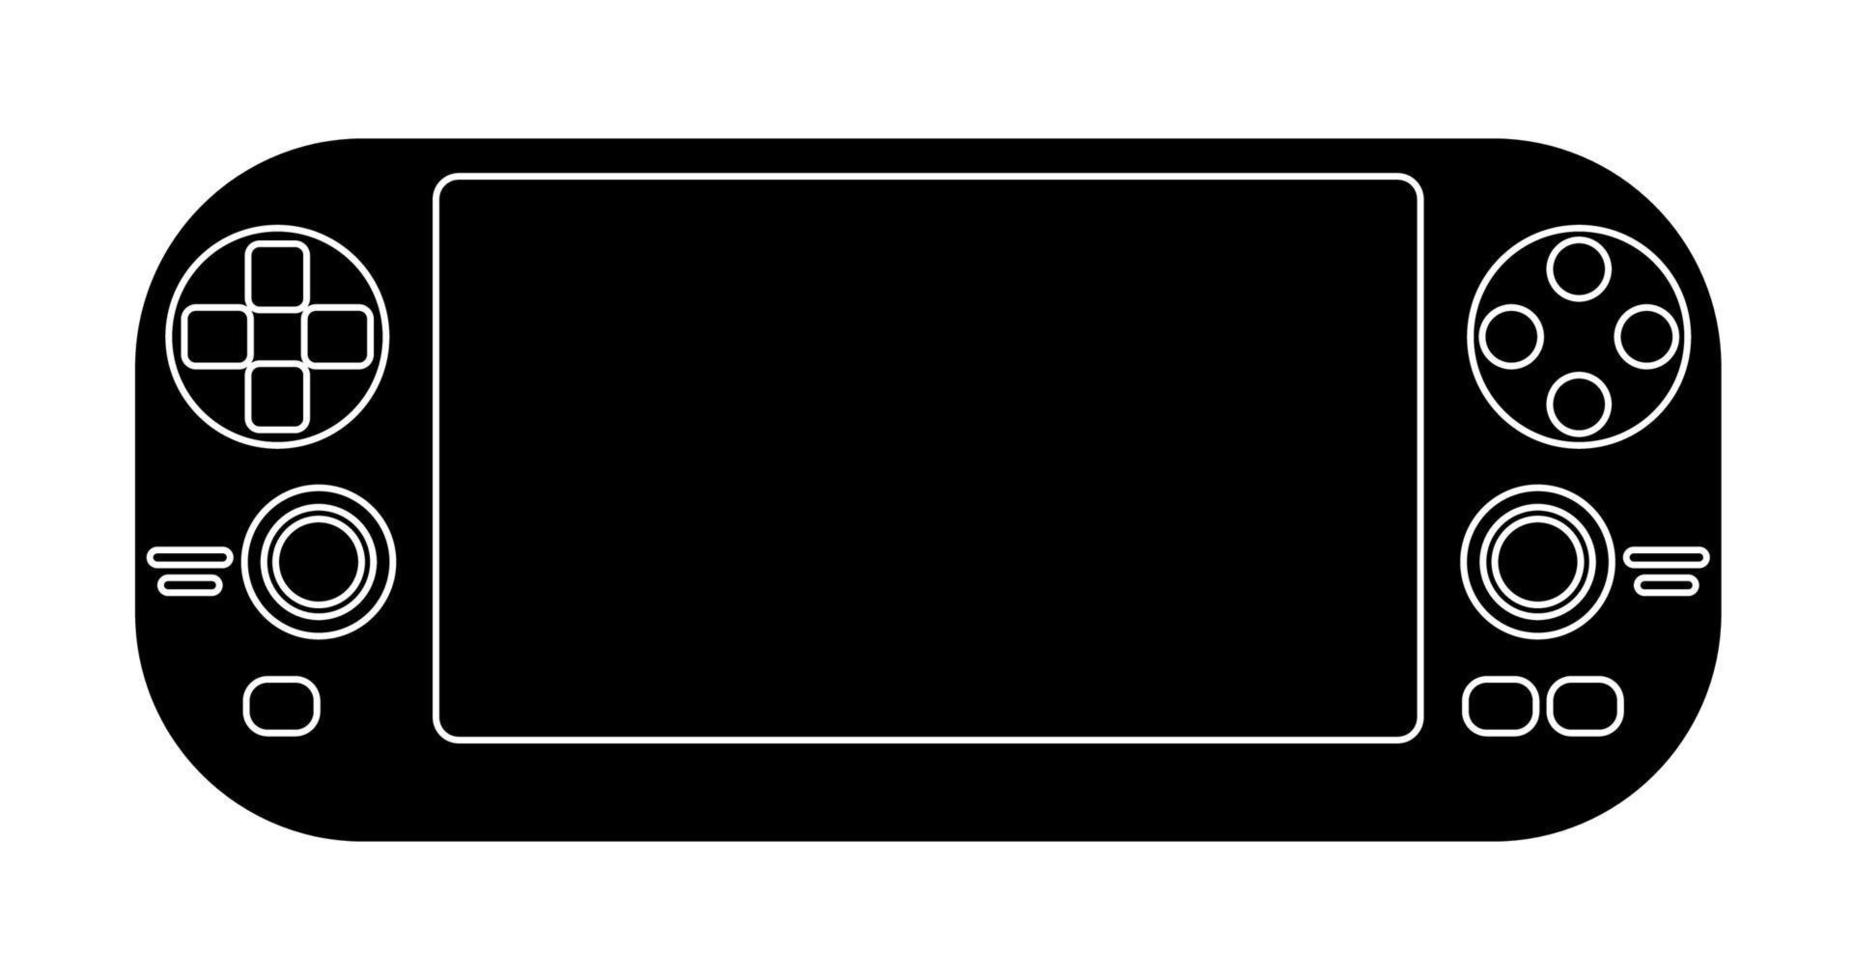 zwart-wit icoon van een draagbare gameconsole, controller voor een game. geïsoleerde vector op witte achtergrond